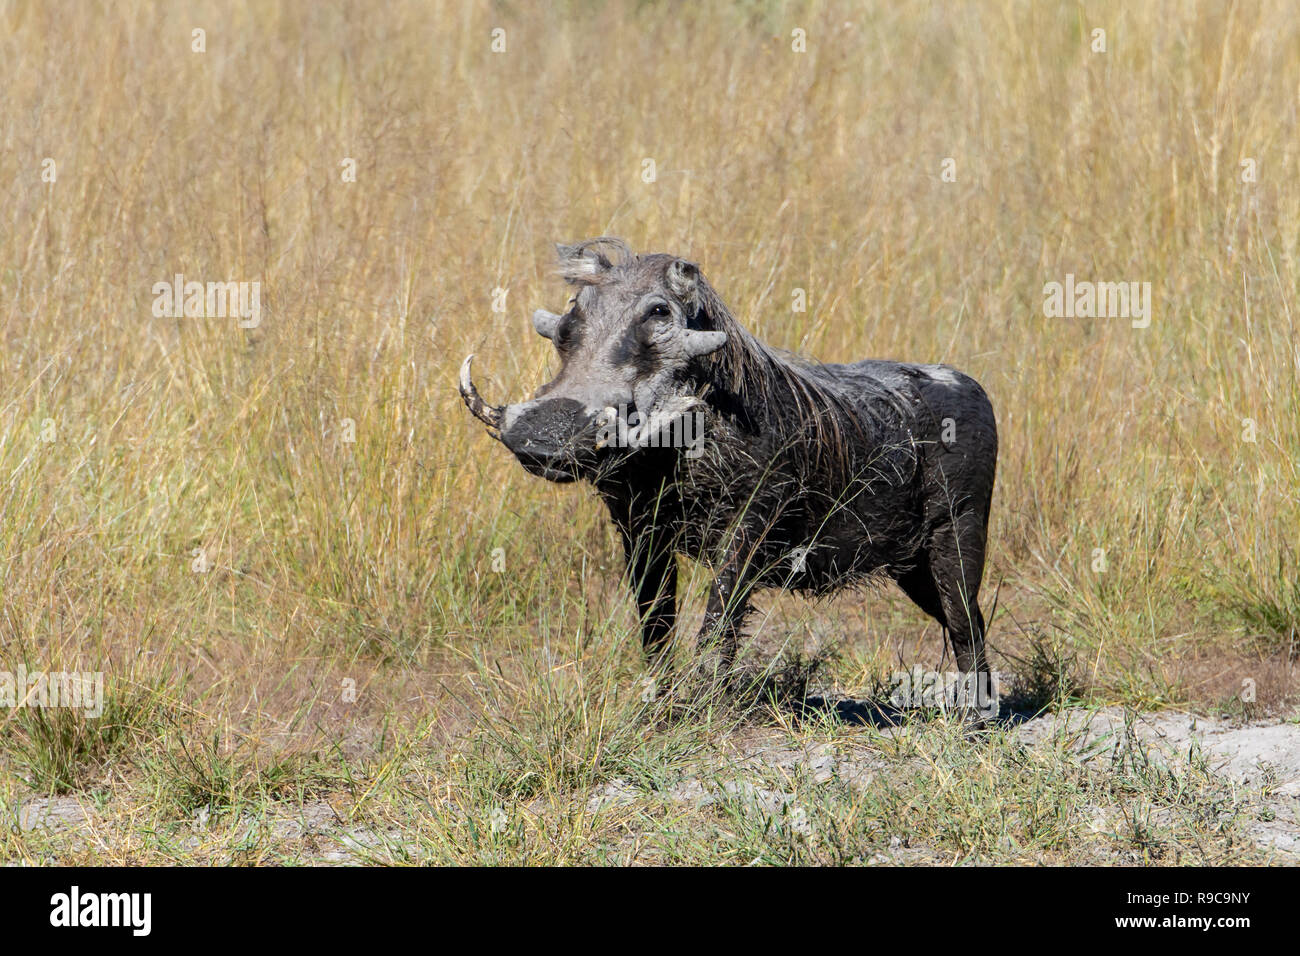 Common warthog (Phacochoerus africanus) in Botswana, Africa Stock Photo